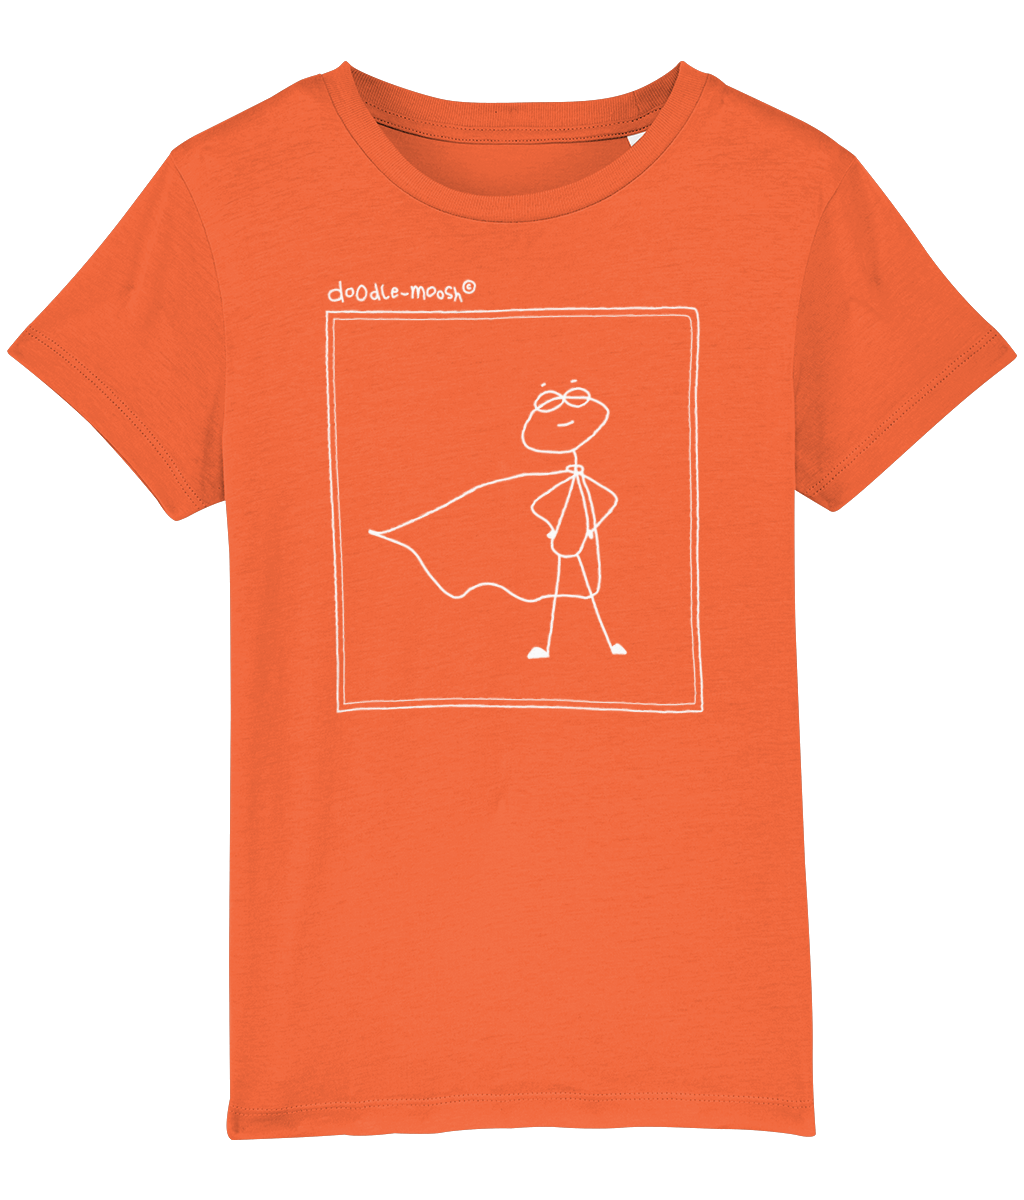 superpower t-shirt, orange with white